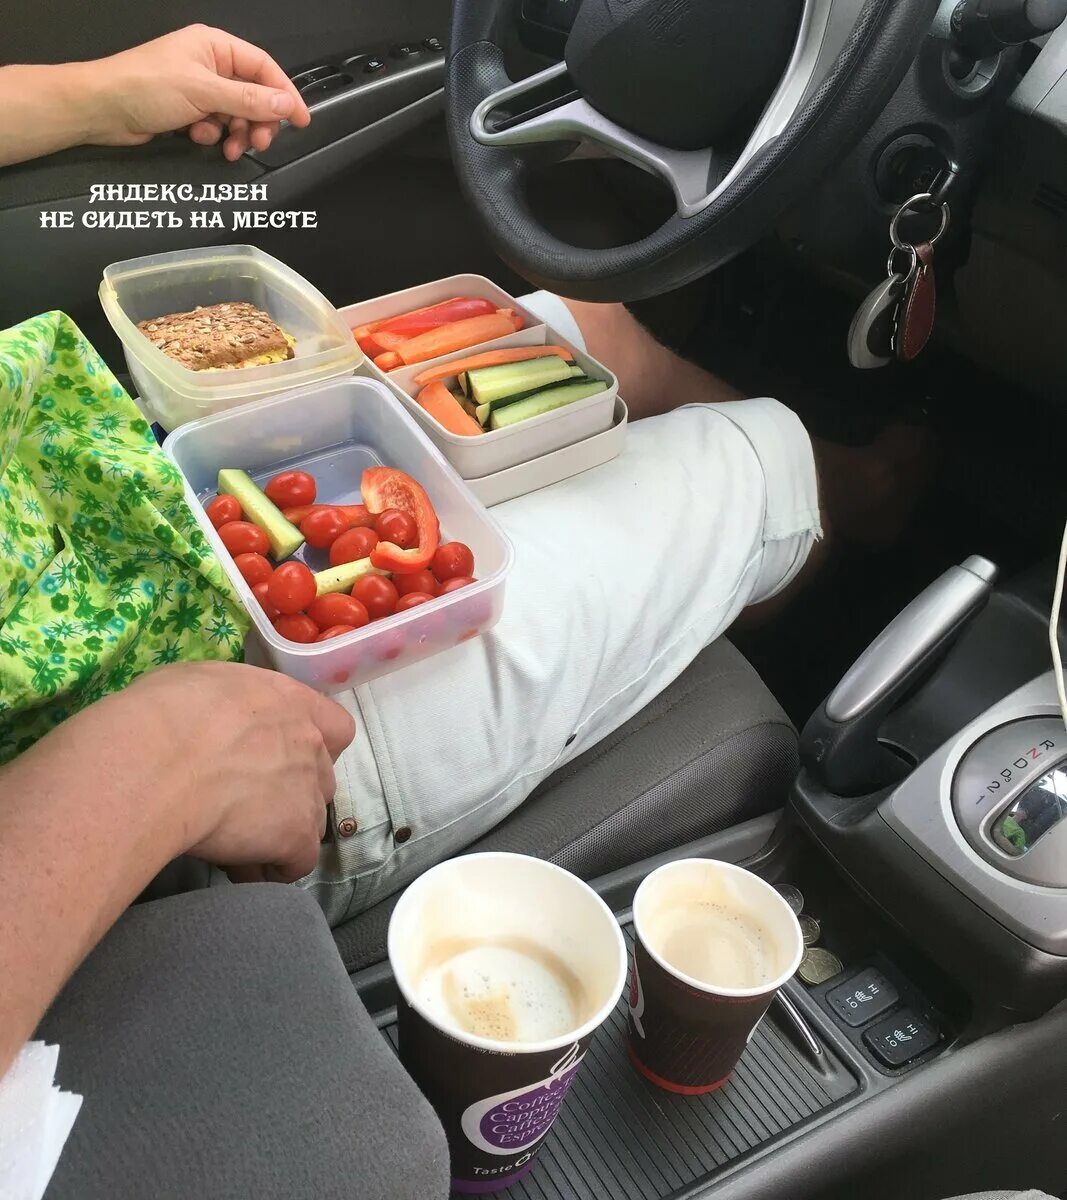 Еда в машине. Перекус в дорогу. Полезные вещи для автомобиля. Перекус в автомобиле. Еда в дорогу летом